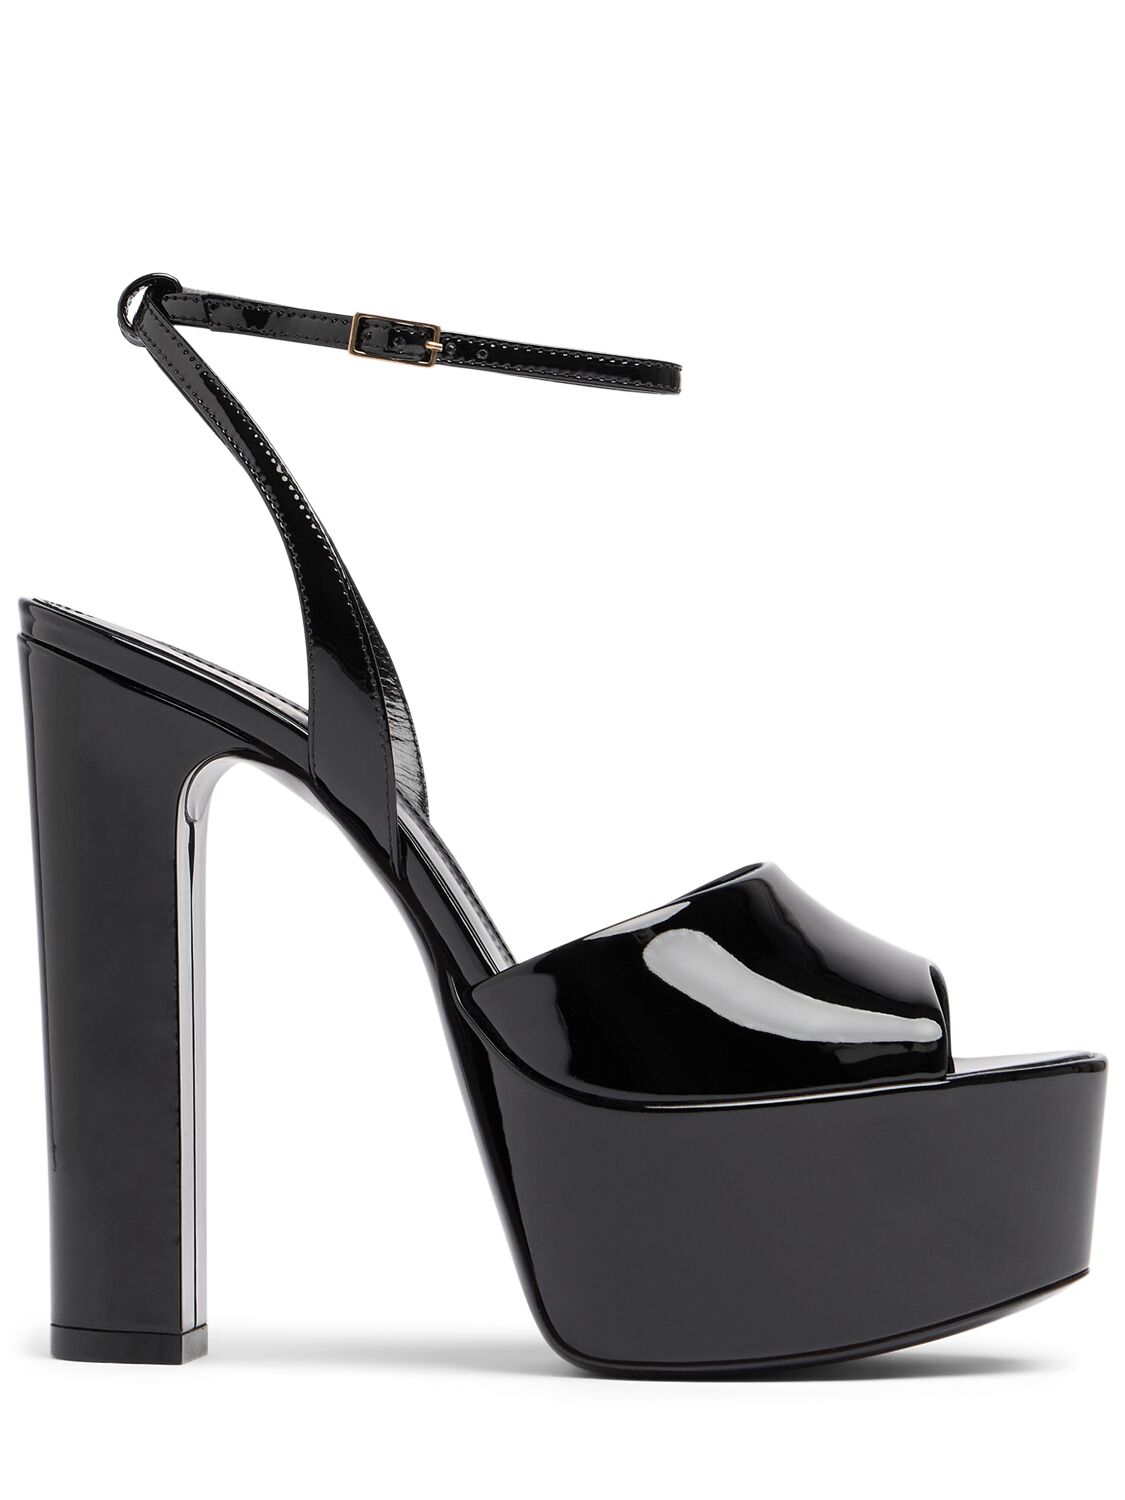 Mm Jodie Leather Platform Sandals - SAINT LAURENT - Modalova